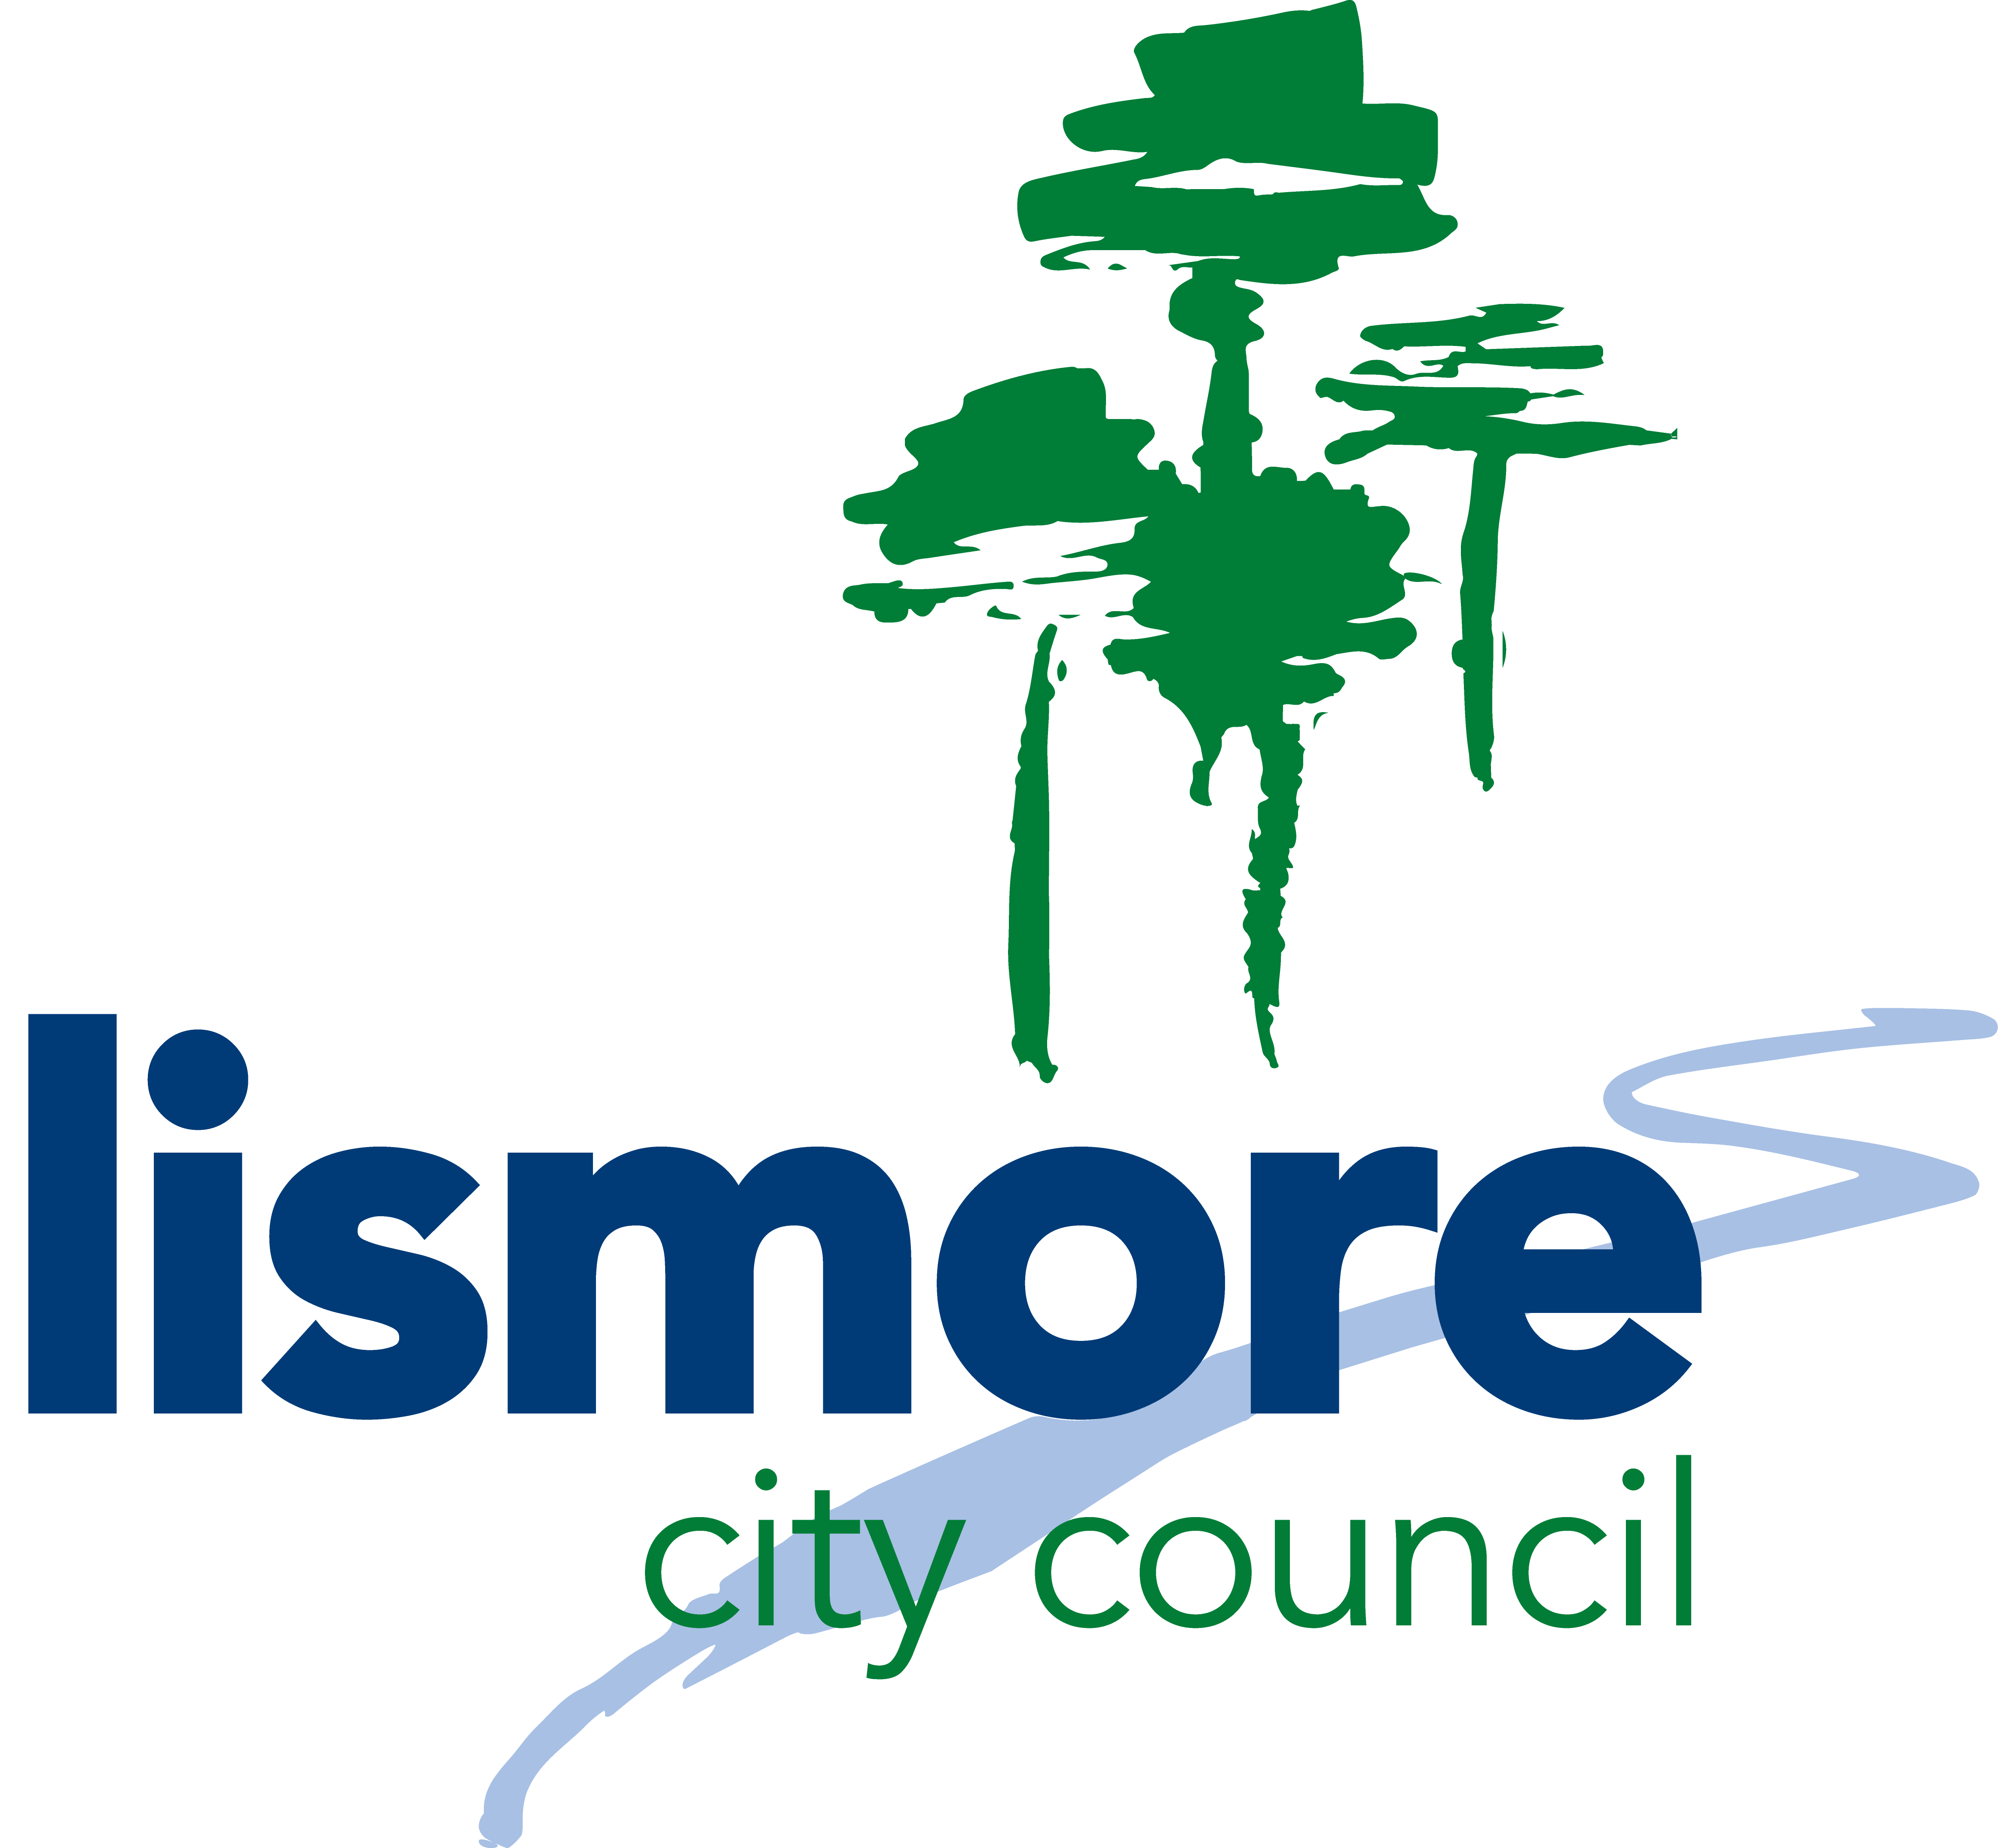 Team member, Lismore City Council